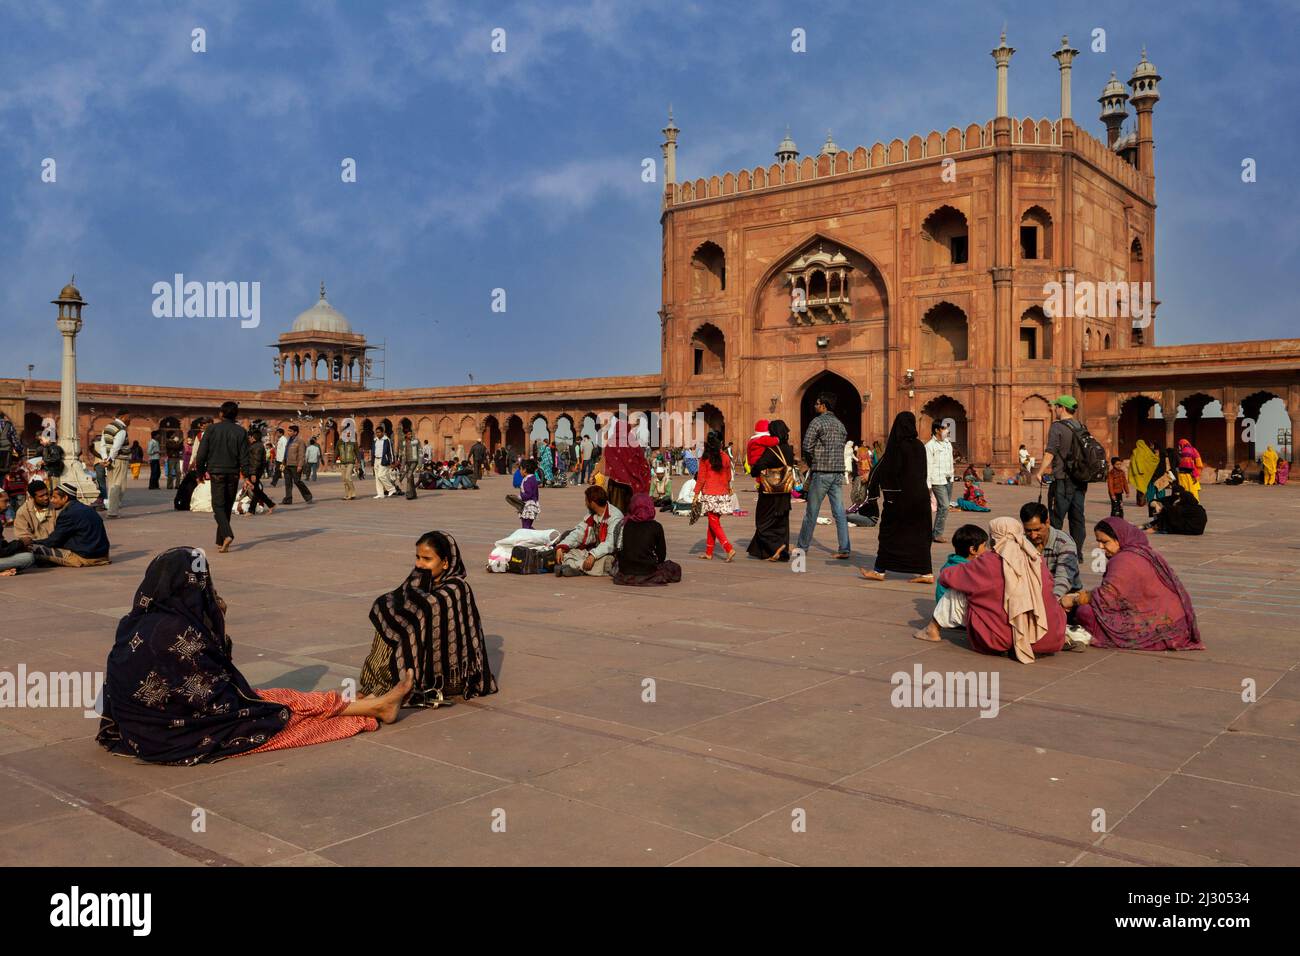 New Delhi, Inde. Cour de la Jama Masjid (mosquée du vendredi), la plus grande mosquée de l'Inde, construite de 1644 à 1656. En attente de prières en fin d'après-midi. Banque D'Images